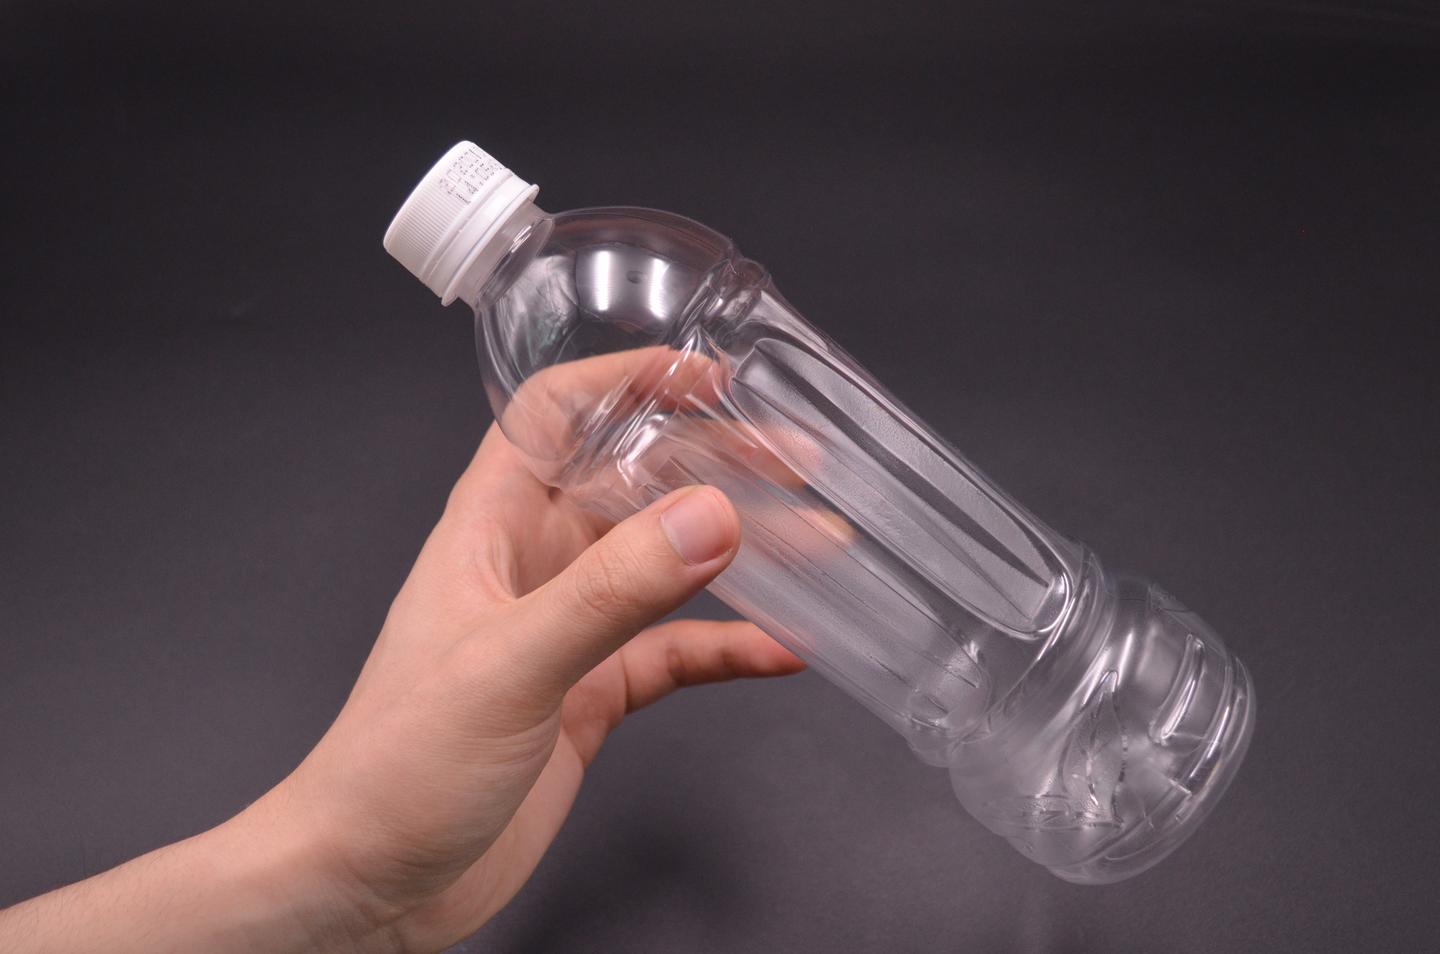 卫生间里放一个塑料瓶 真的太厉害了 解决了困扰大家的一大难题 知乎